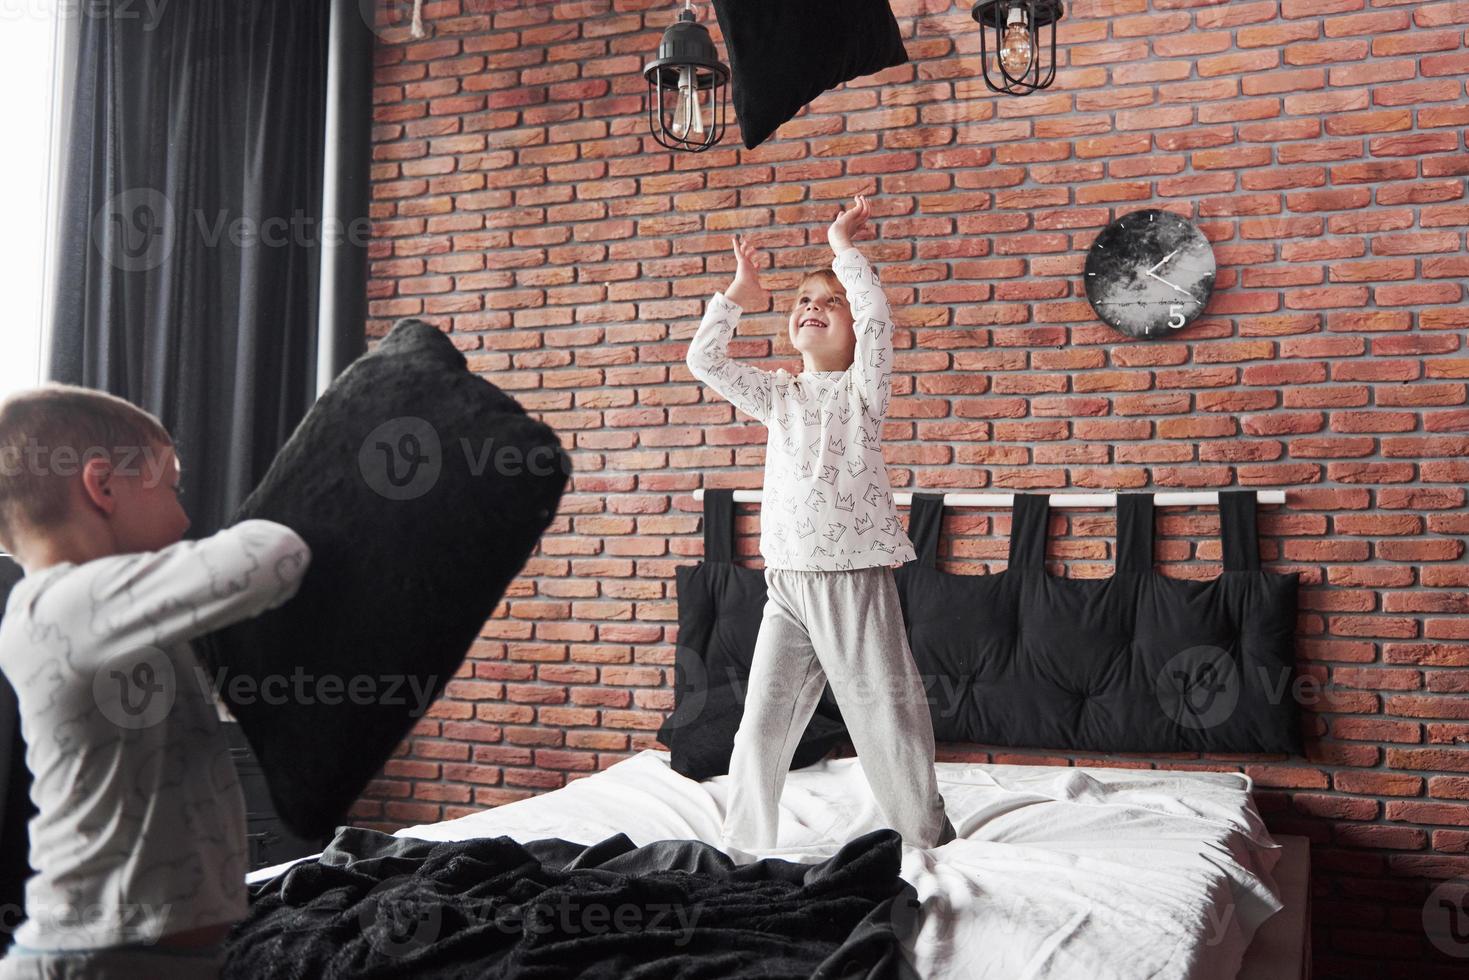 vilains enfants petit garçon et fille ont organisé une bataille d'oreillers sur le lit dans la chambre. ils aiment ce genre de jeu photo